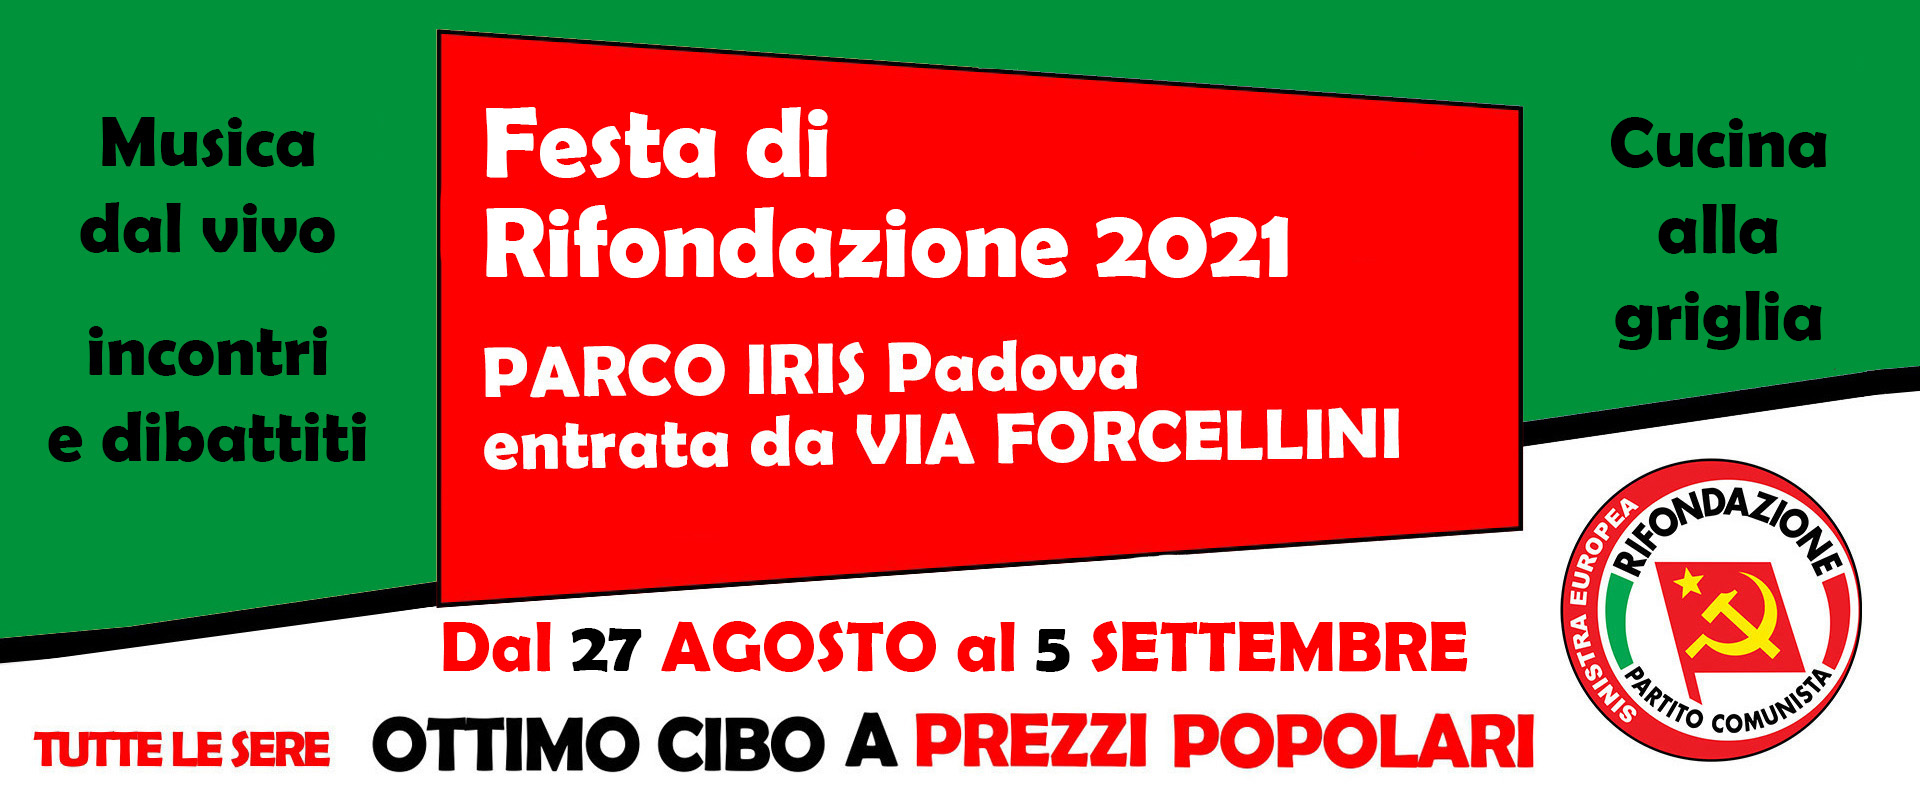 Festa provinciale di Rifondazione a Padova 2021